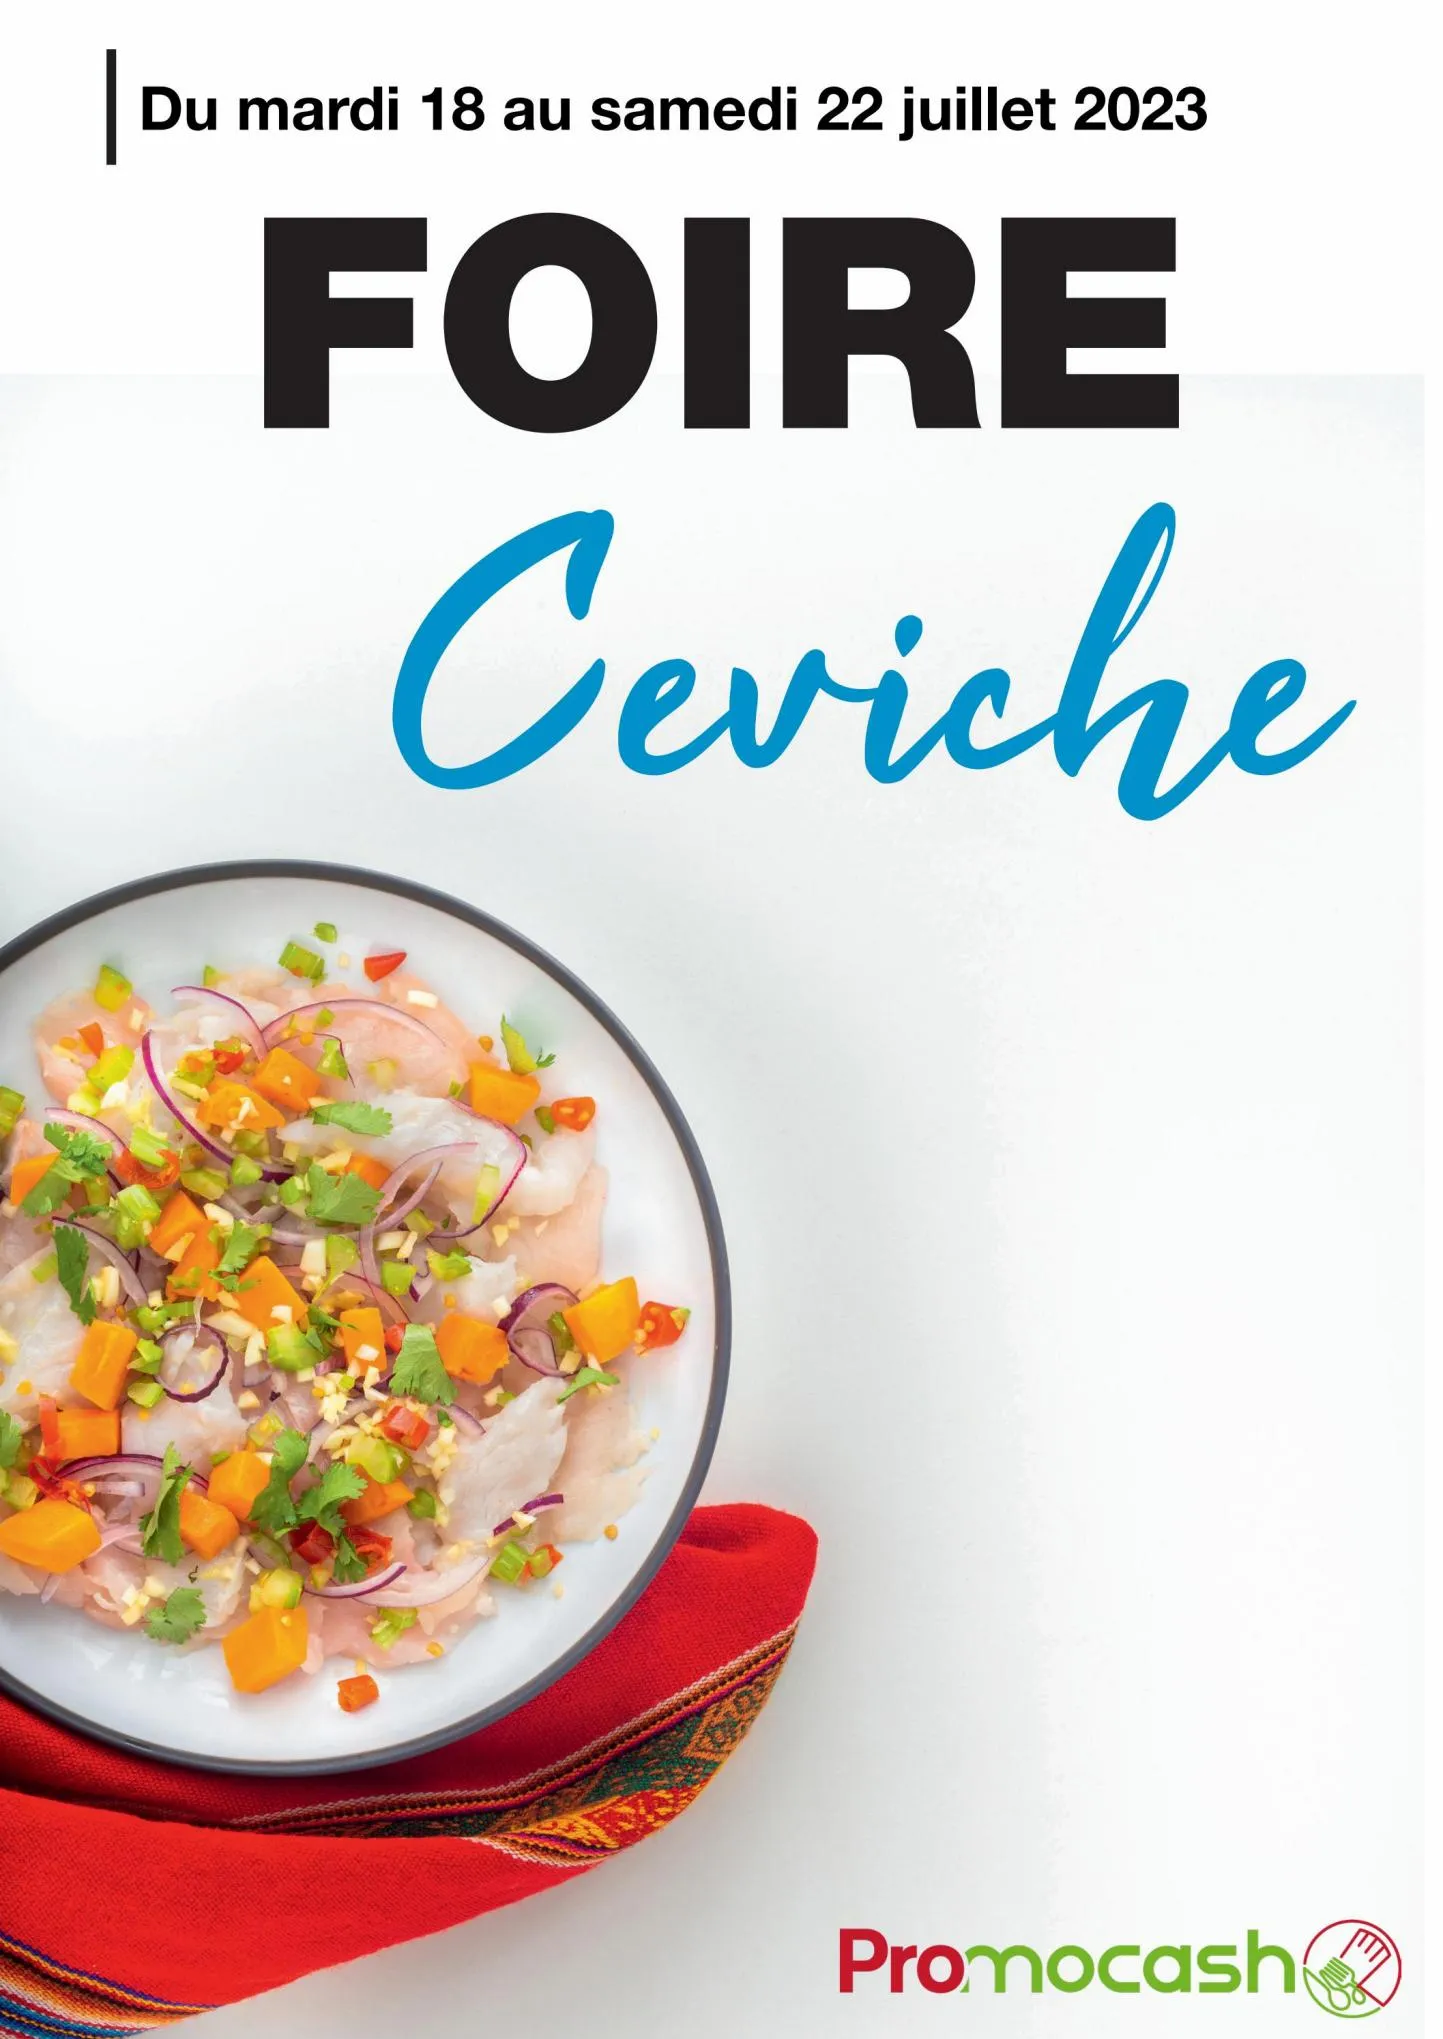 Catalogue Foire ceviche, page 00001